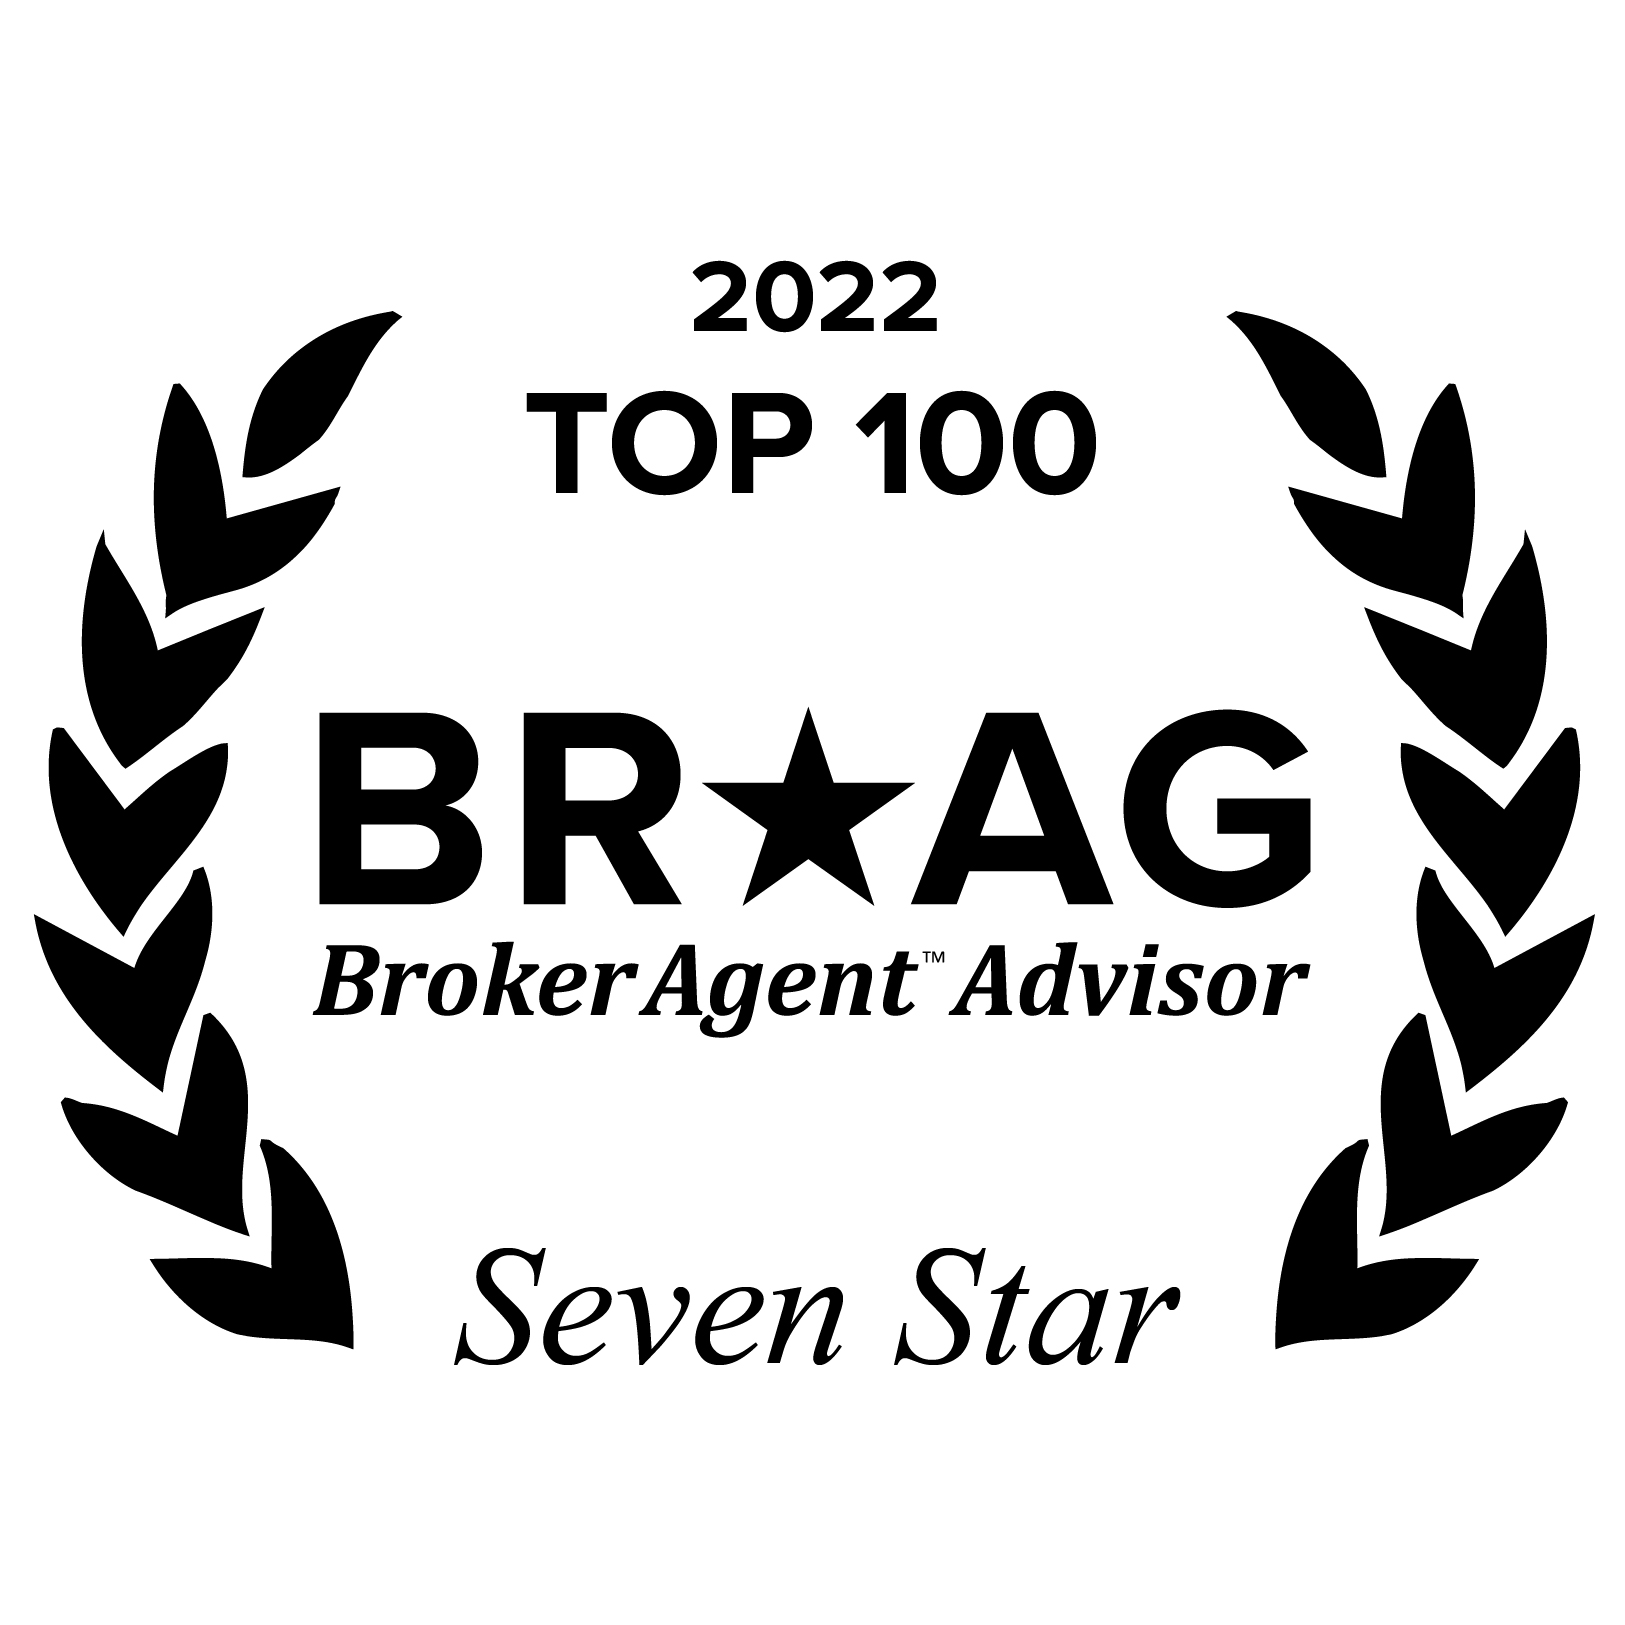 BRAG-Broker-Agent-Advisor-top100-2022-white-11.jpg